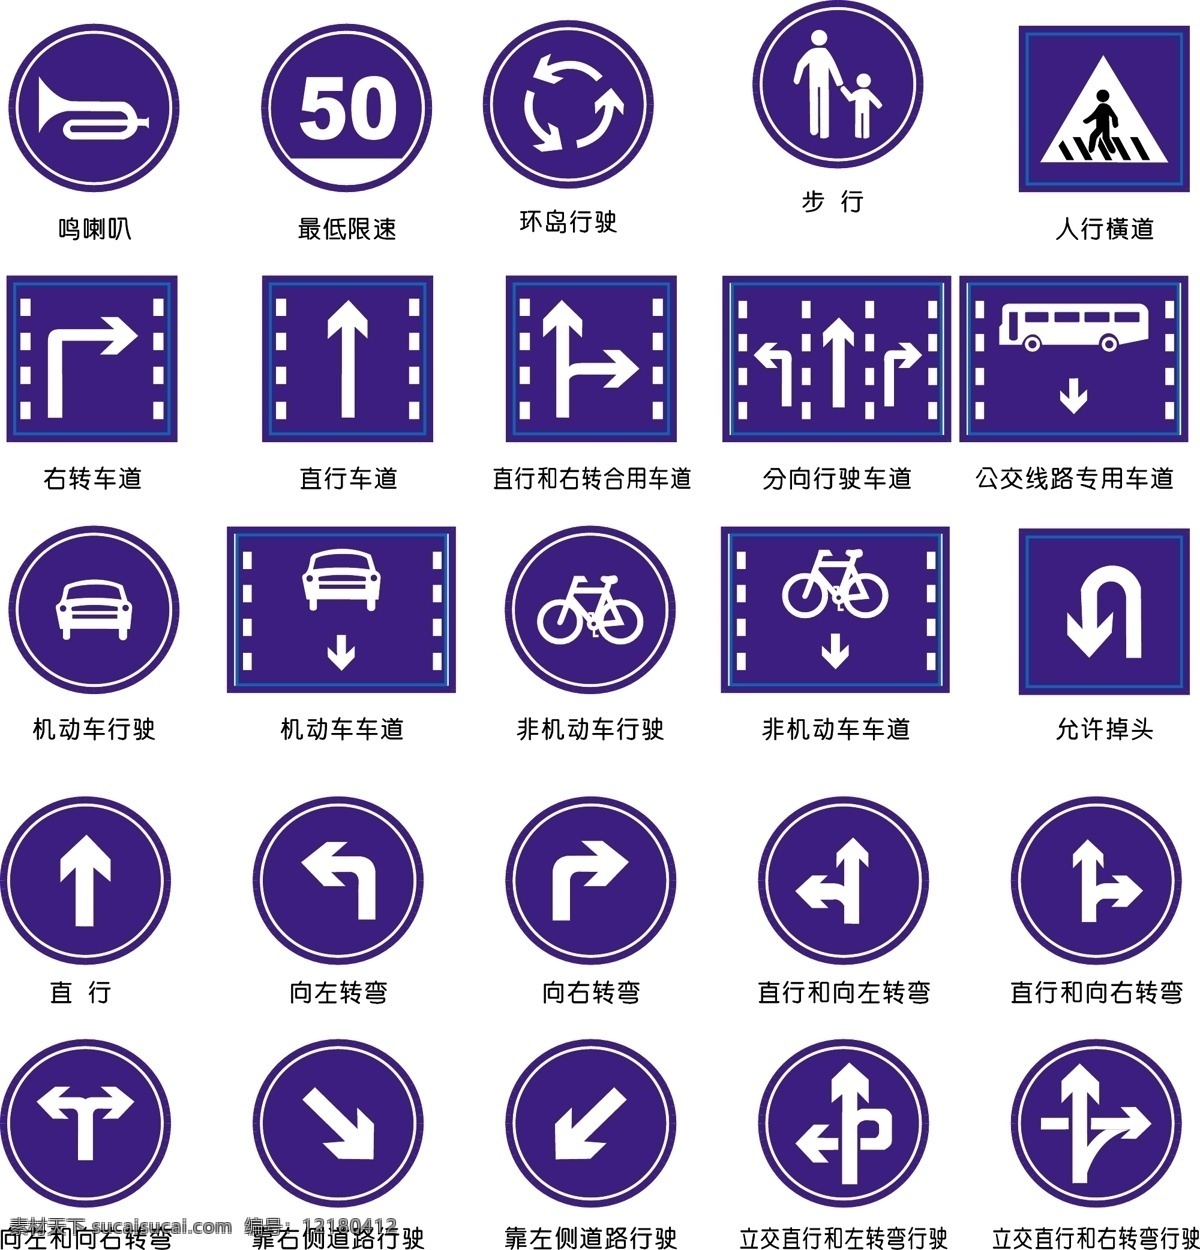 交通标示 交通 标示 标志 标识 矢量 方向 转向 机动车 限速 环岛 喇叭 步行 公共标识标志 标识标志图标